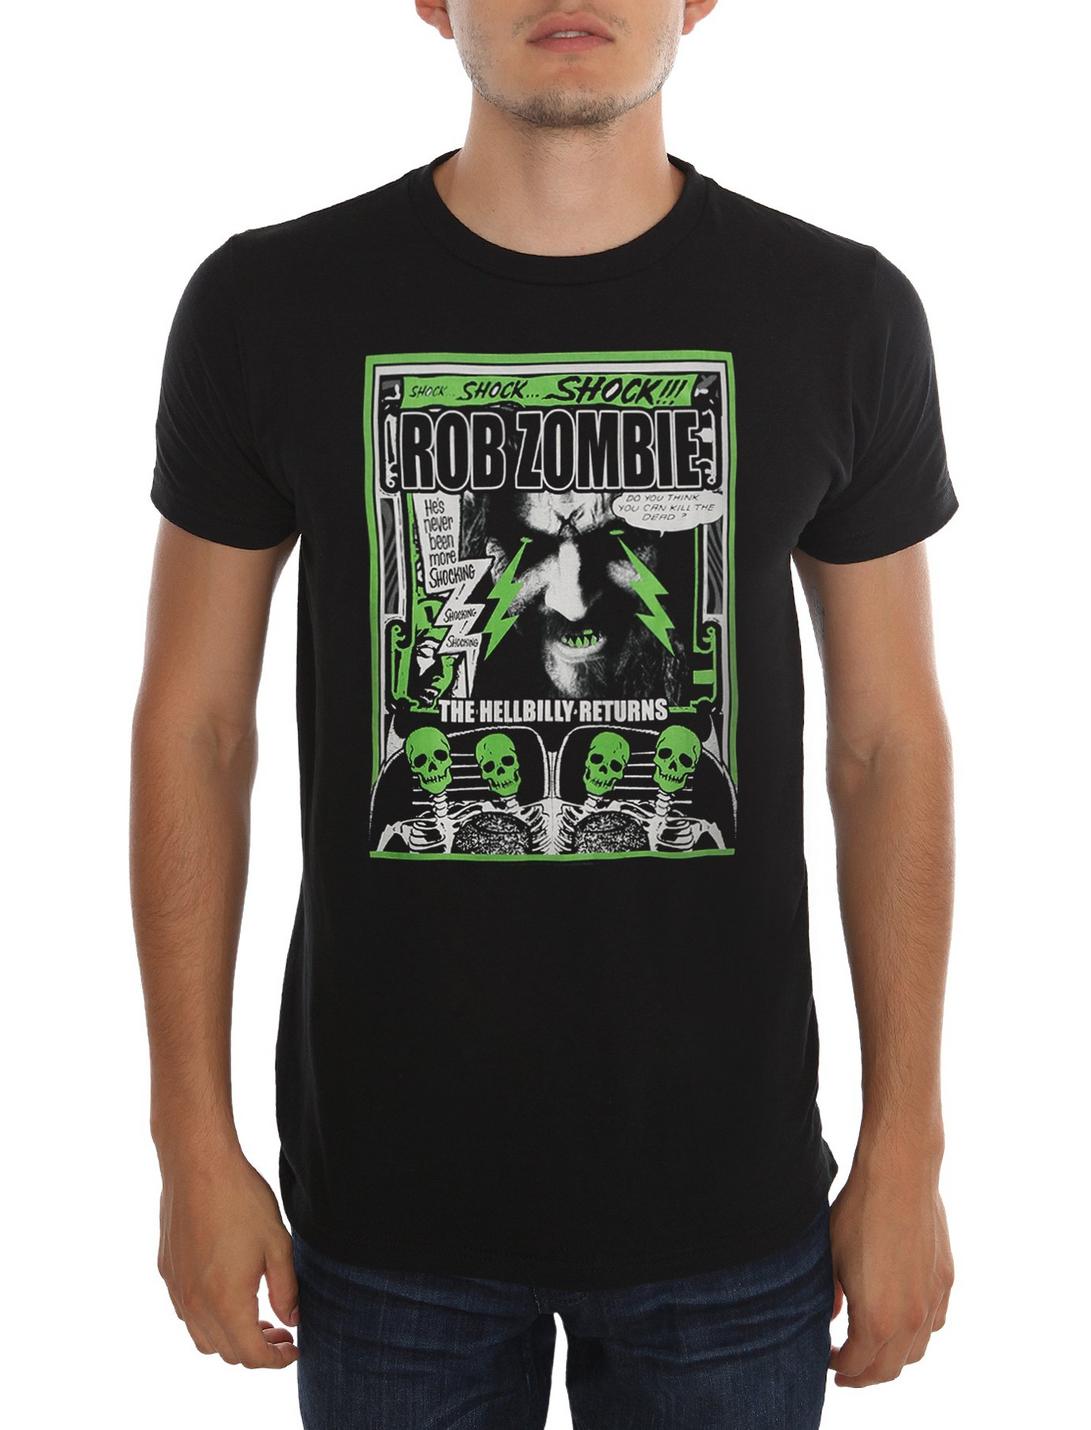 Rob Zombie Shocking T-Shirt, BLACK, hi-res